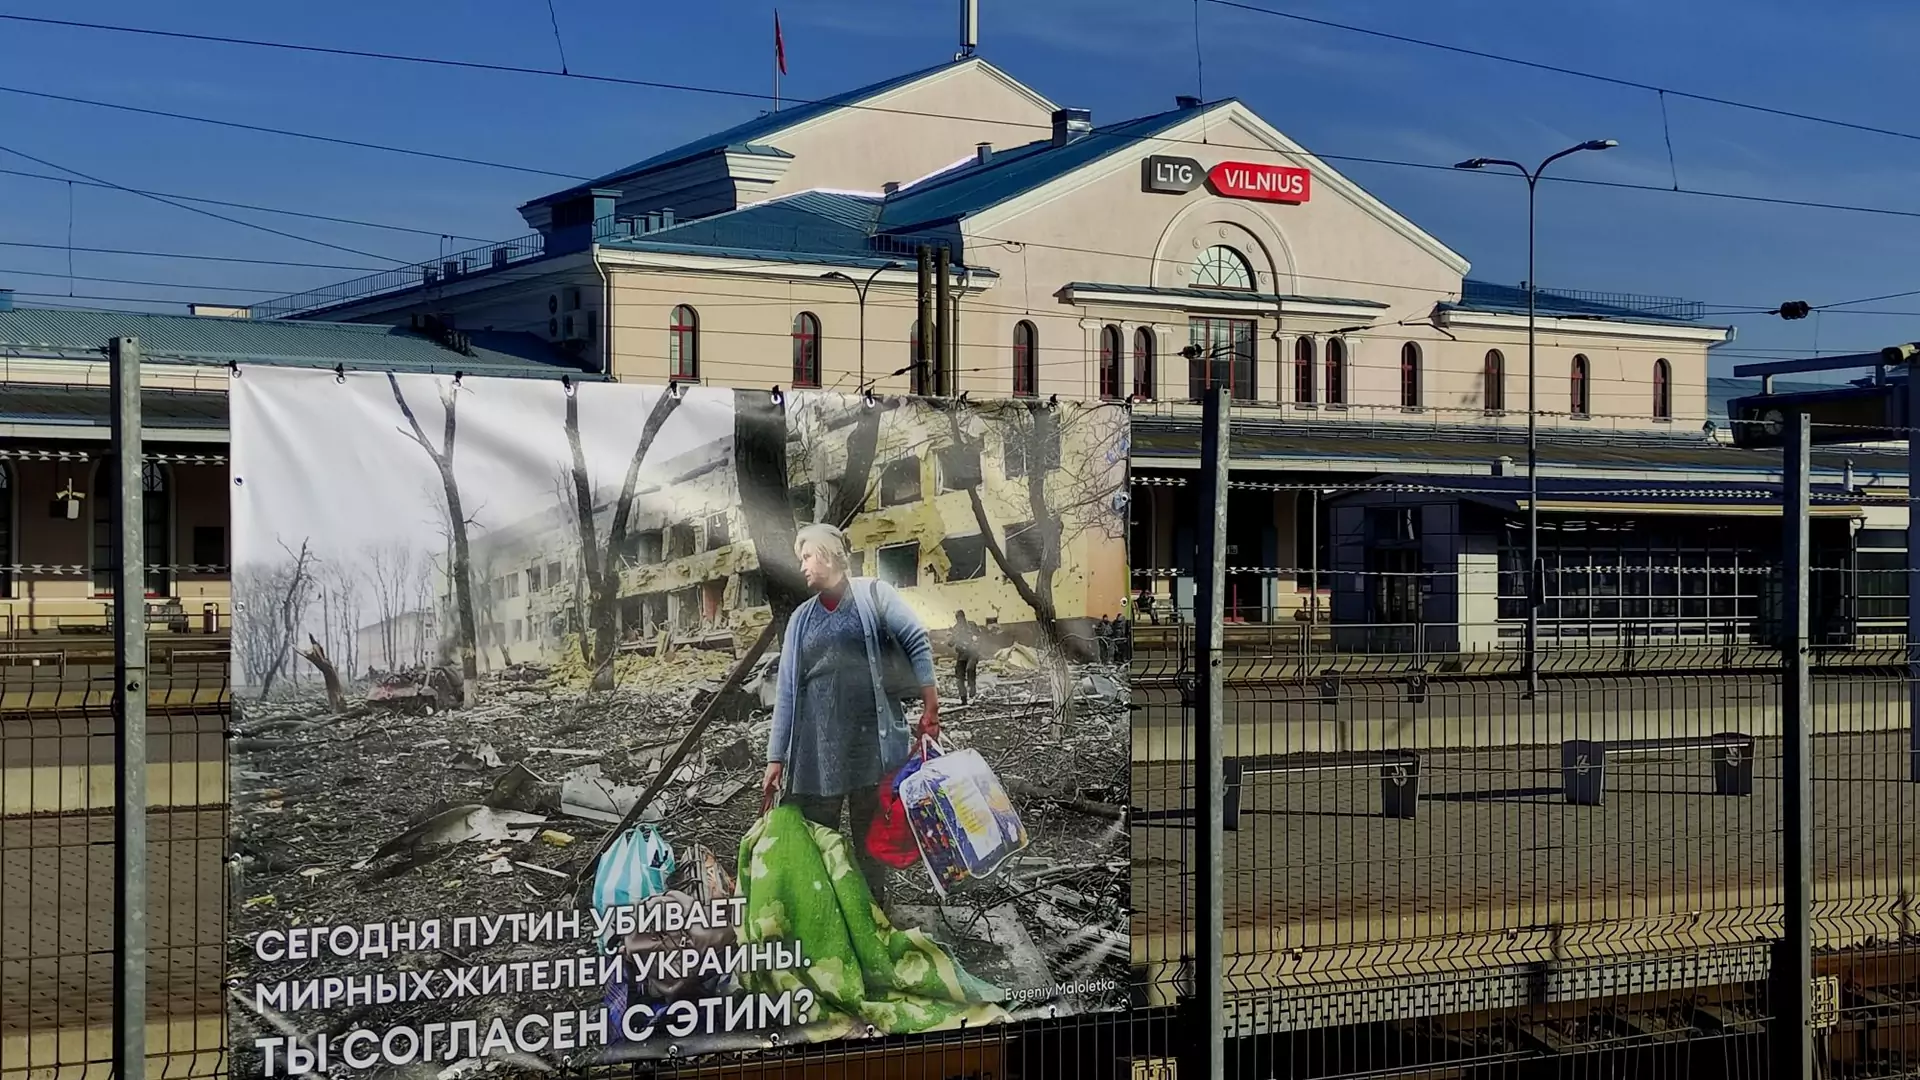 Rosjanie podróżujący pociągiem zobaczą brutalną wystawę zdjęć z Ukrainy